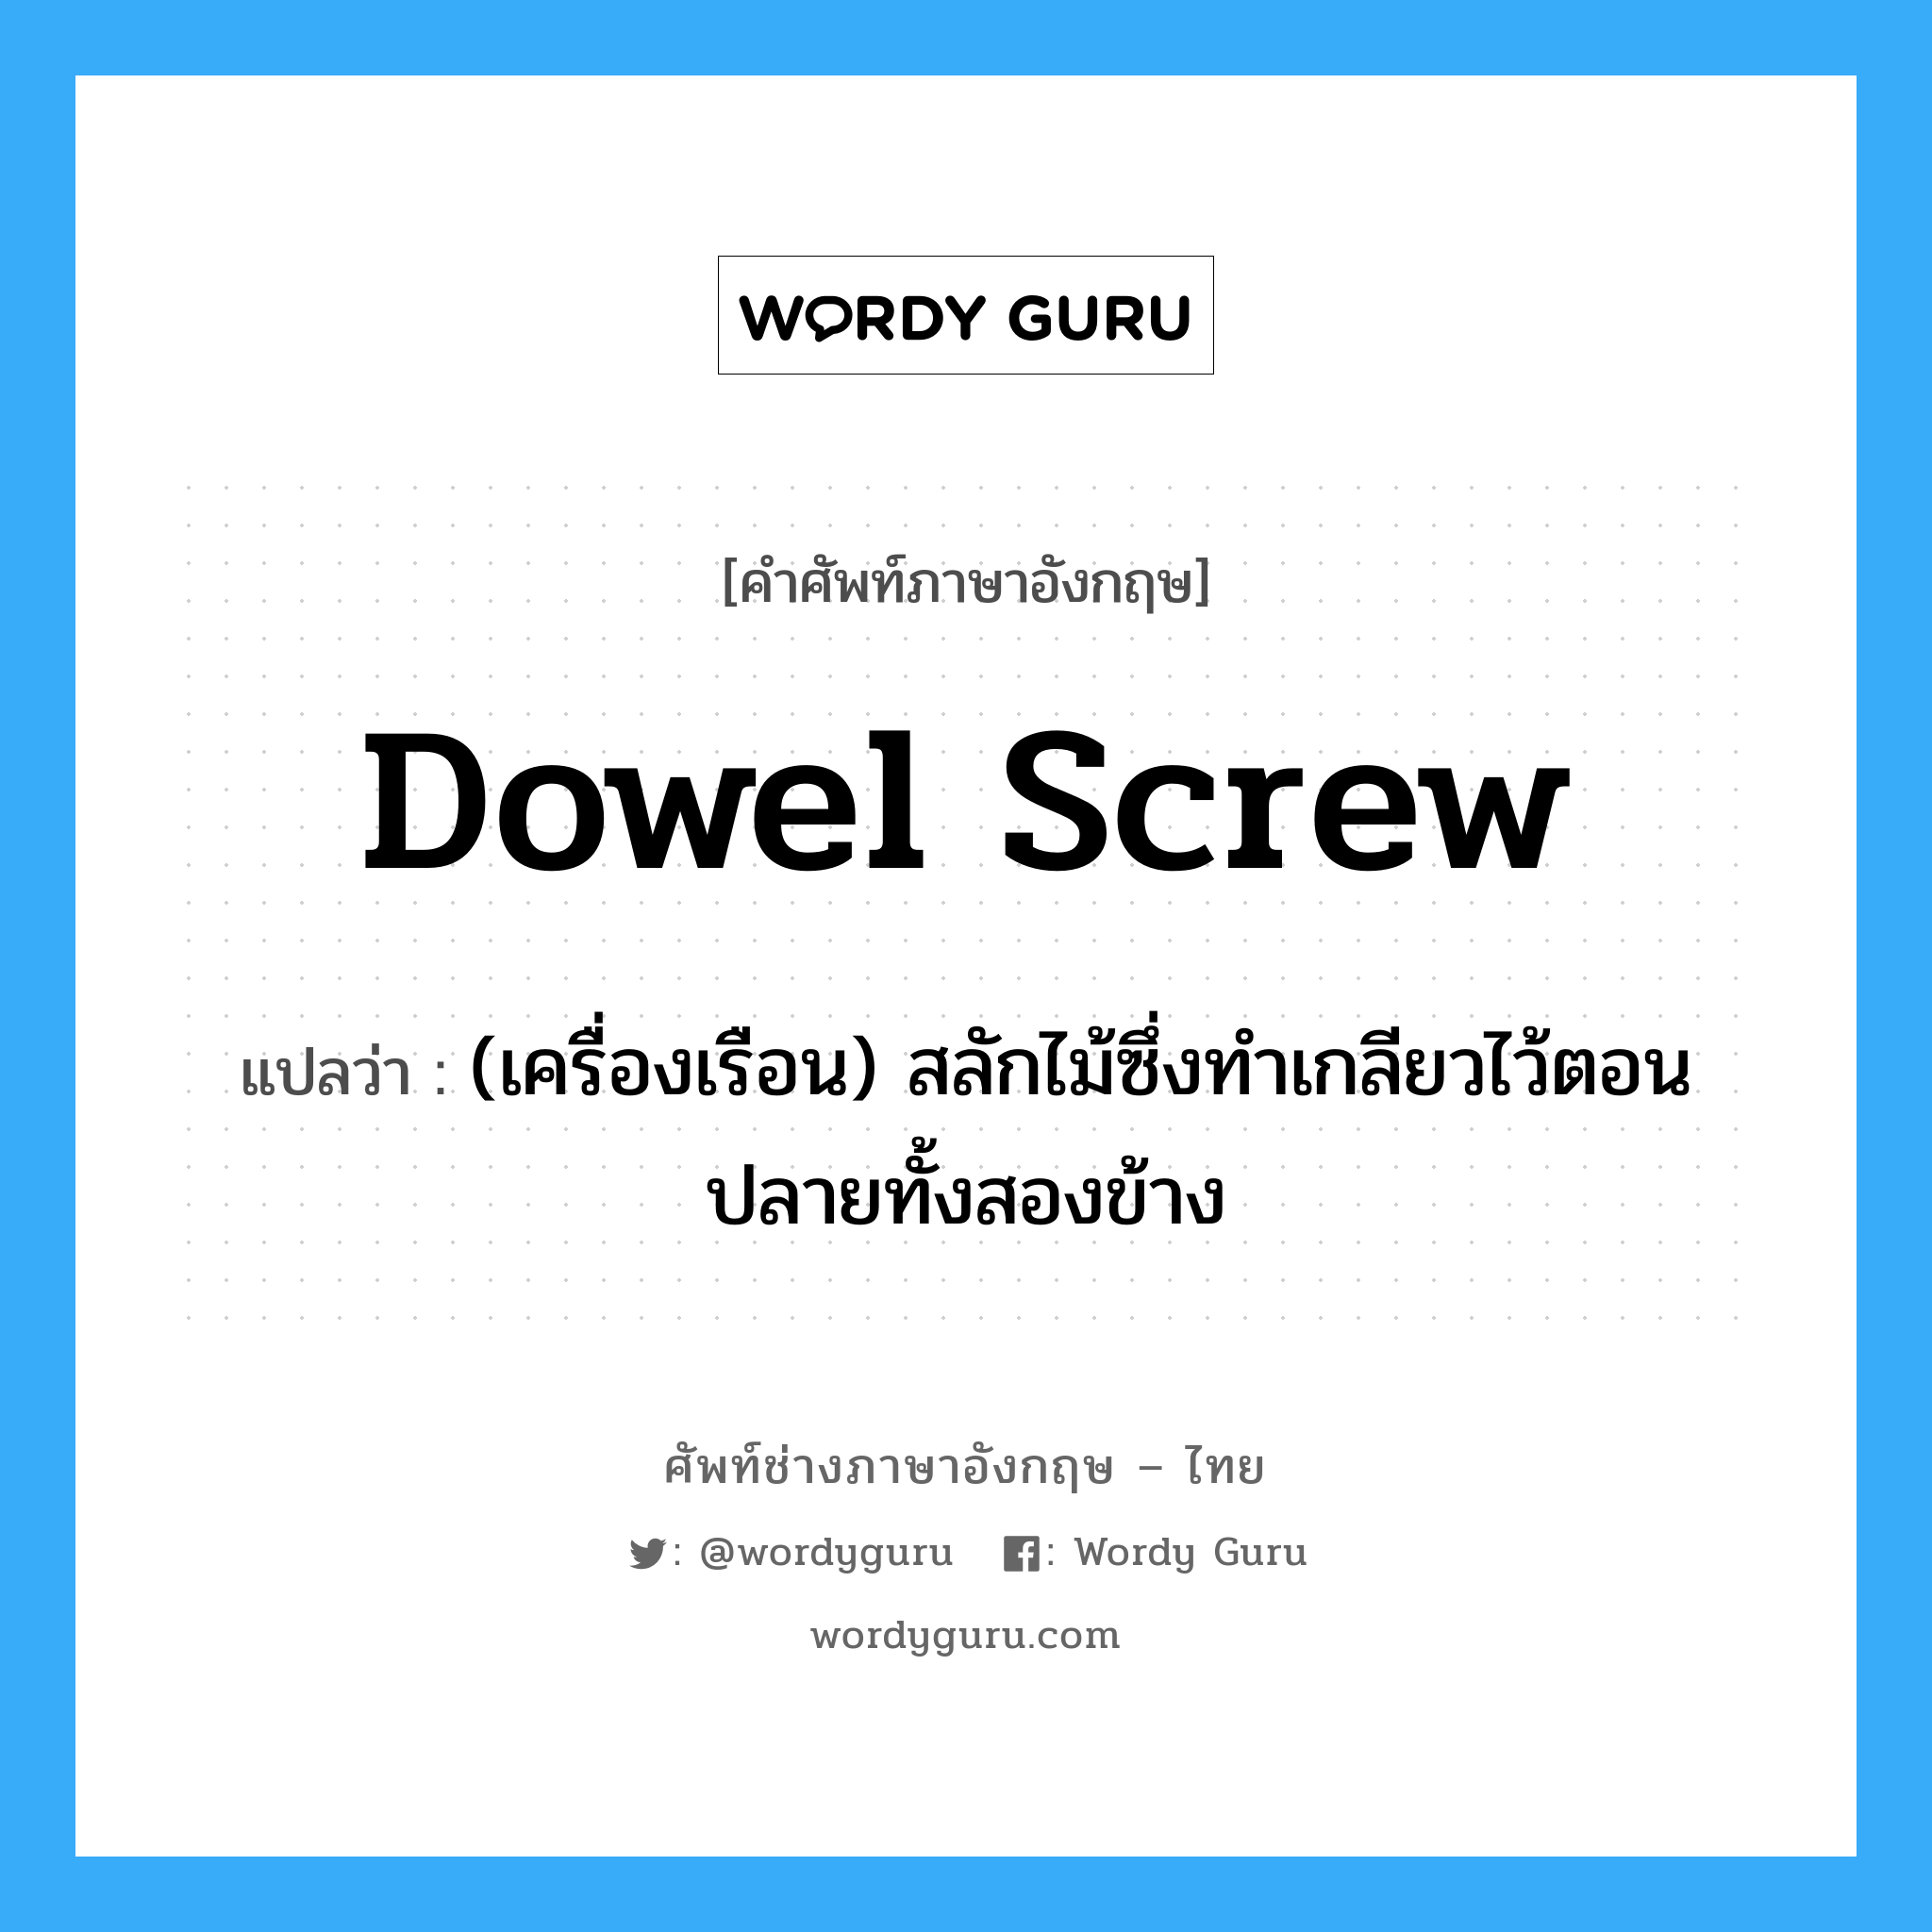 dowel screw แปลว่า?, คำศัพท์ช่างภาษาอังกฤษ - ไทย dowel screw คำศัพท์ภาษาอังกฤษ dowel screw แปลว่า (เครื่องเรือน) สลักไม้ซึ่งทำเกลียวไว้ตอนปลายทั้งสองข้าง